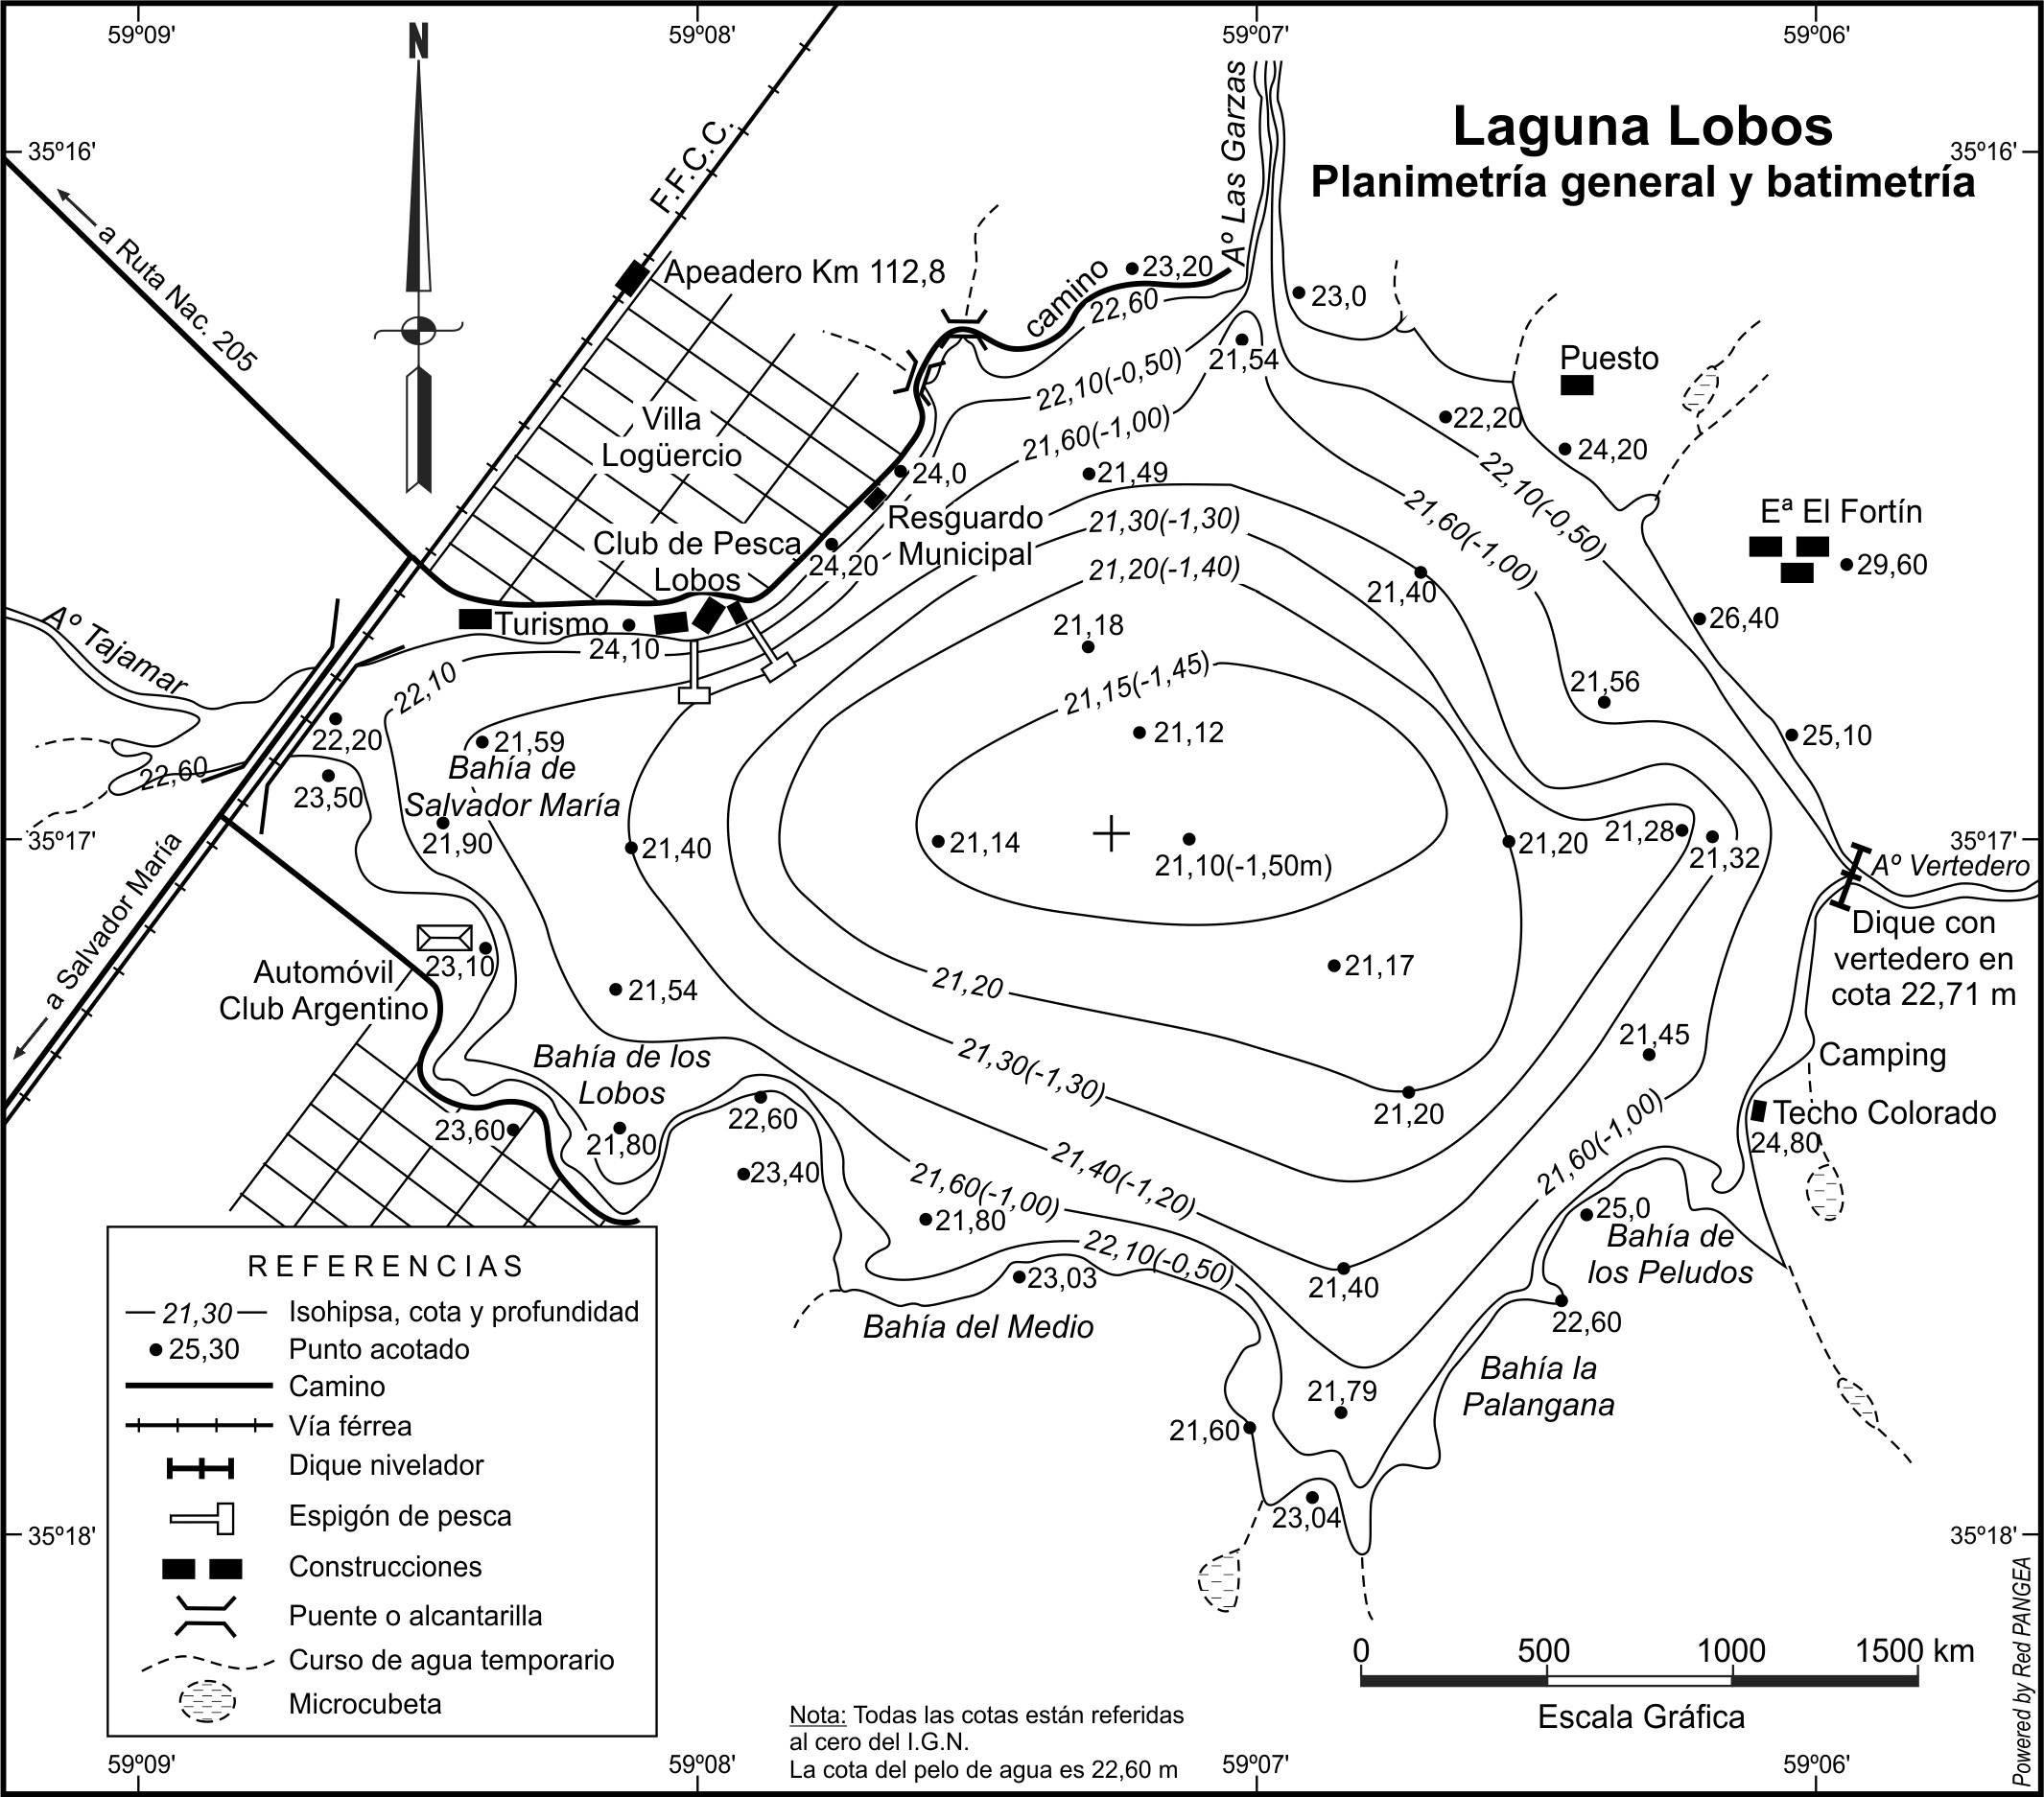 Mapa de la planimetría y batimetría acotada de la laguna Lobos.